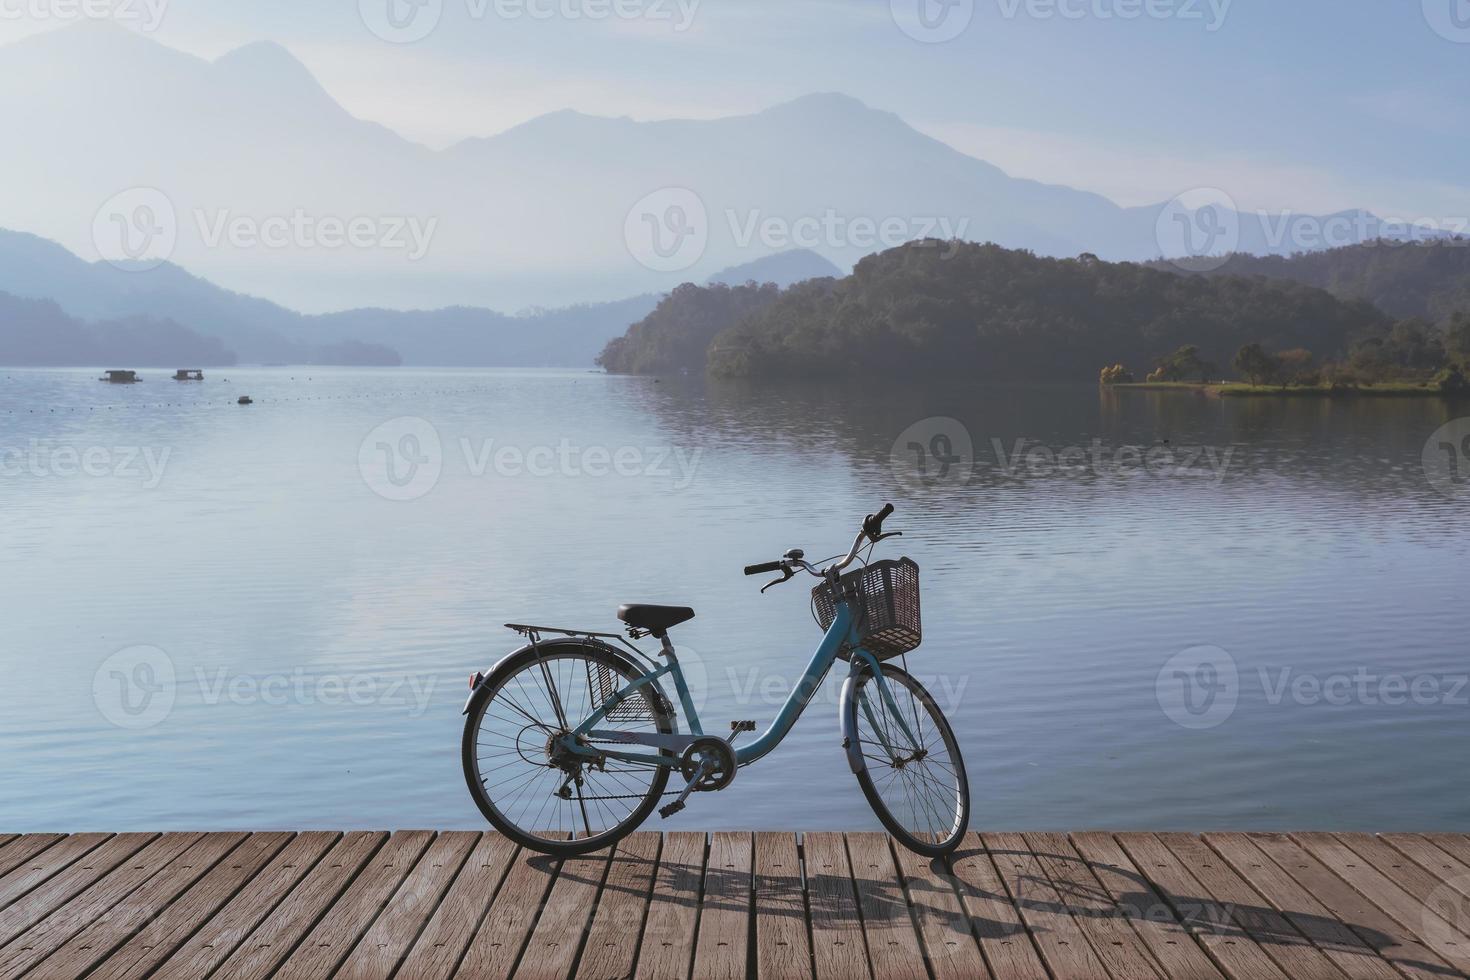 bicicleta na trilha de bicicleta do lago da lua do sol, conceito de estilo de vida de viagem foto